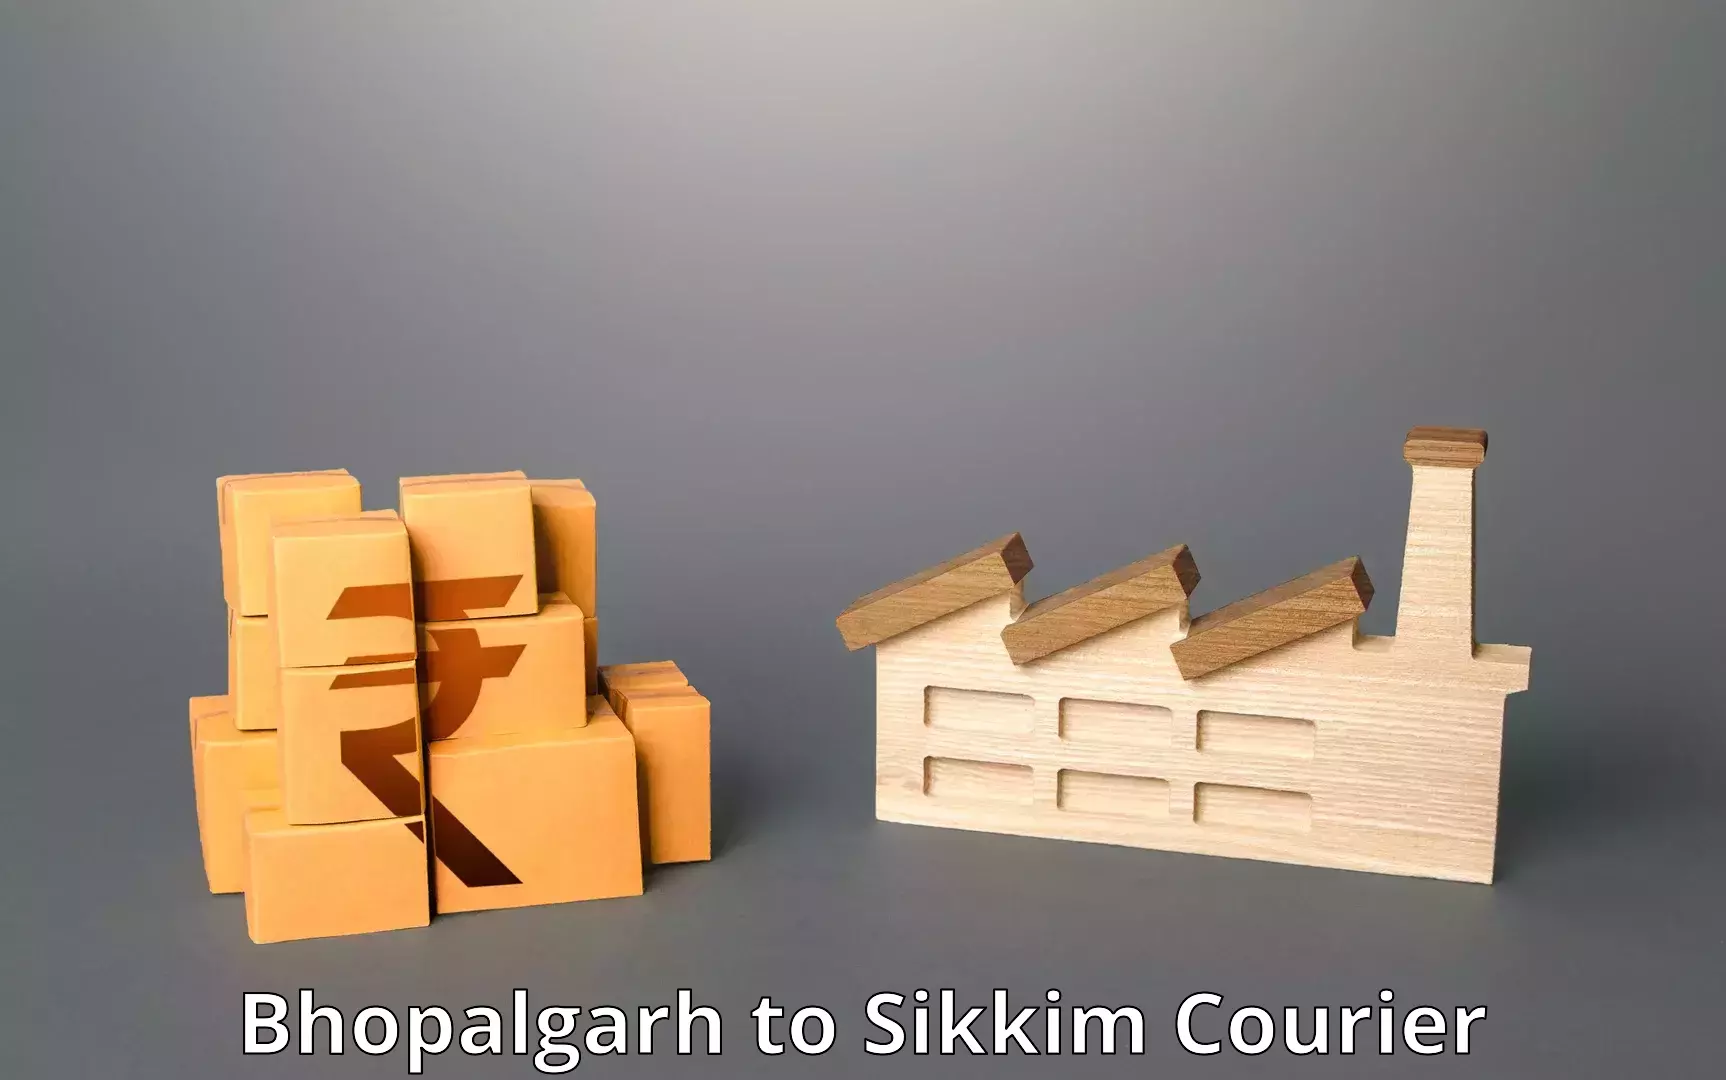 Customer-centric shipping Bhopalgarh to Sikkim